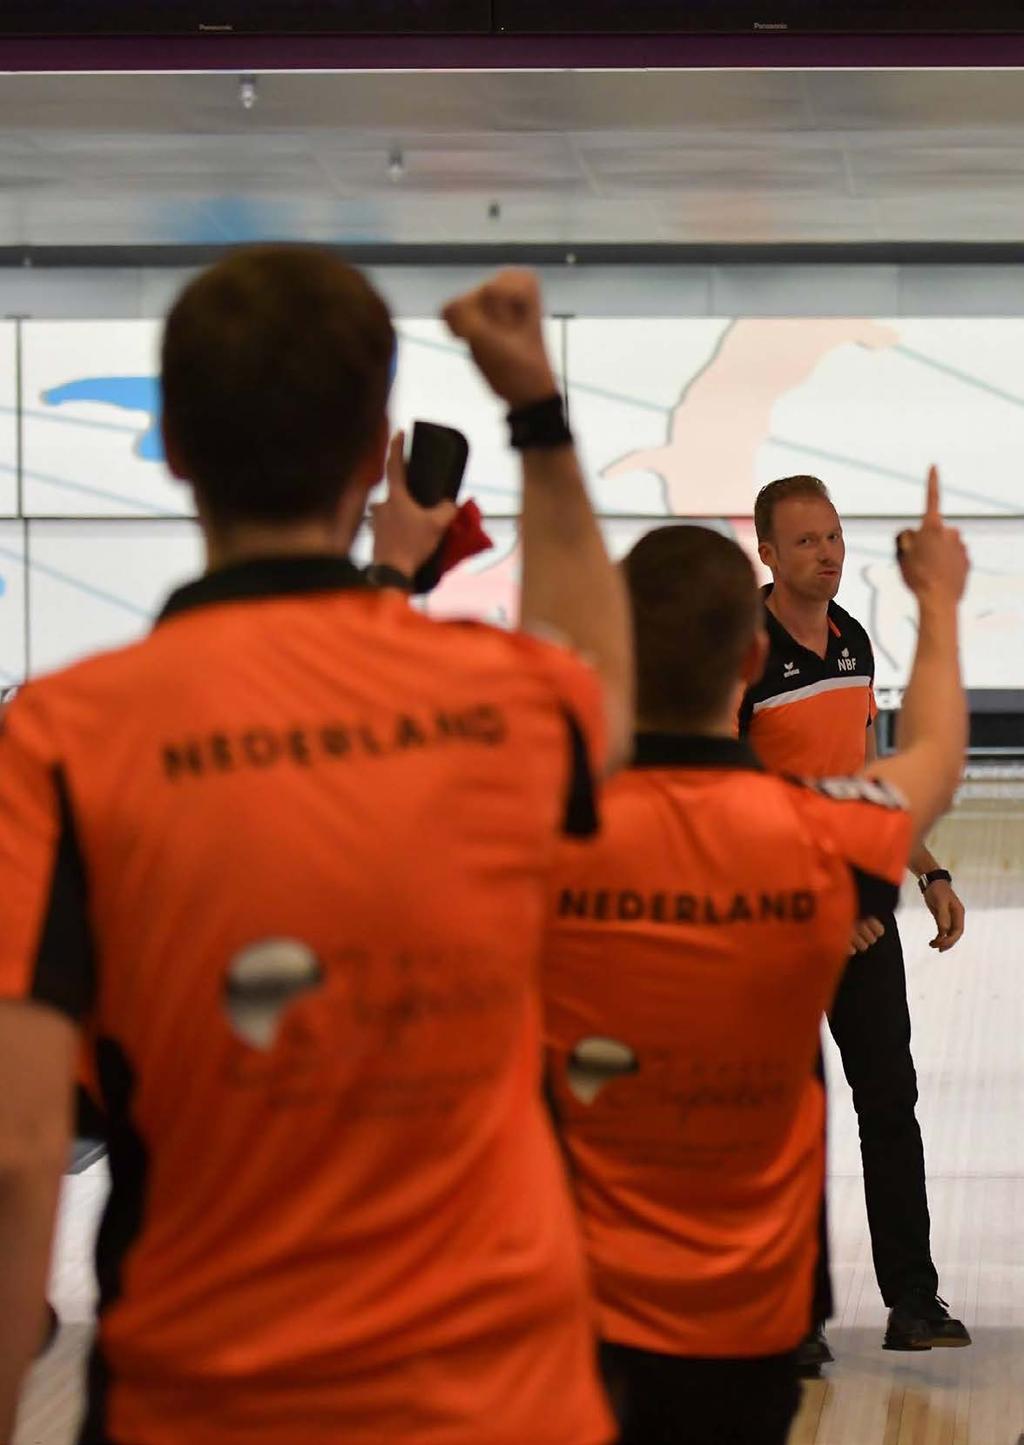 Jaarplan 2020 8 Ambities 2023: Team NL Bowling is aanwezig tijdens alle EK s en WK s waarbij het meedoet om de prijzen. Spelers maar ook trainers & coaches zijn op het niveau dat te bewerkstelligen.